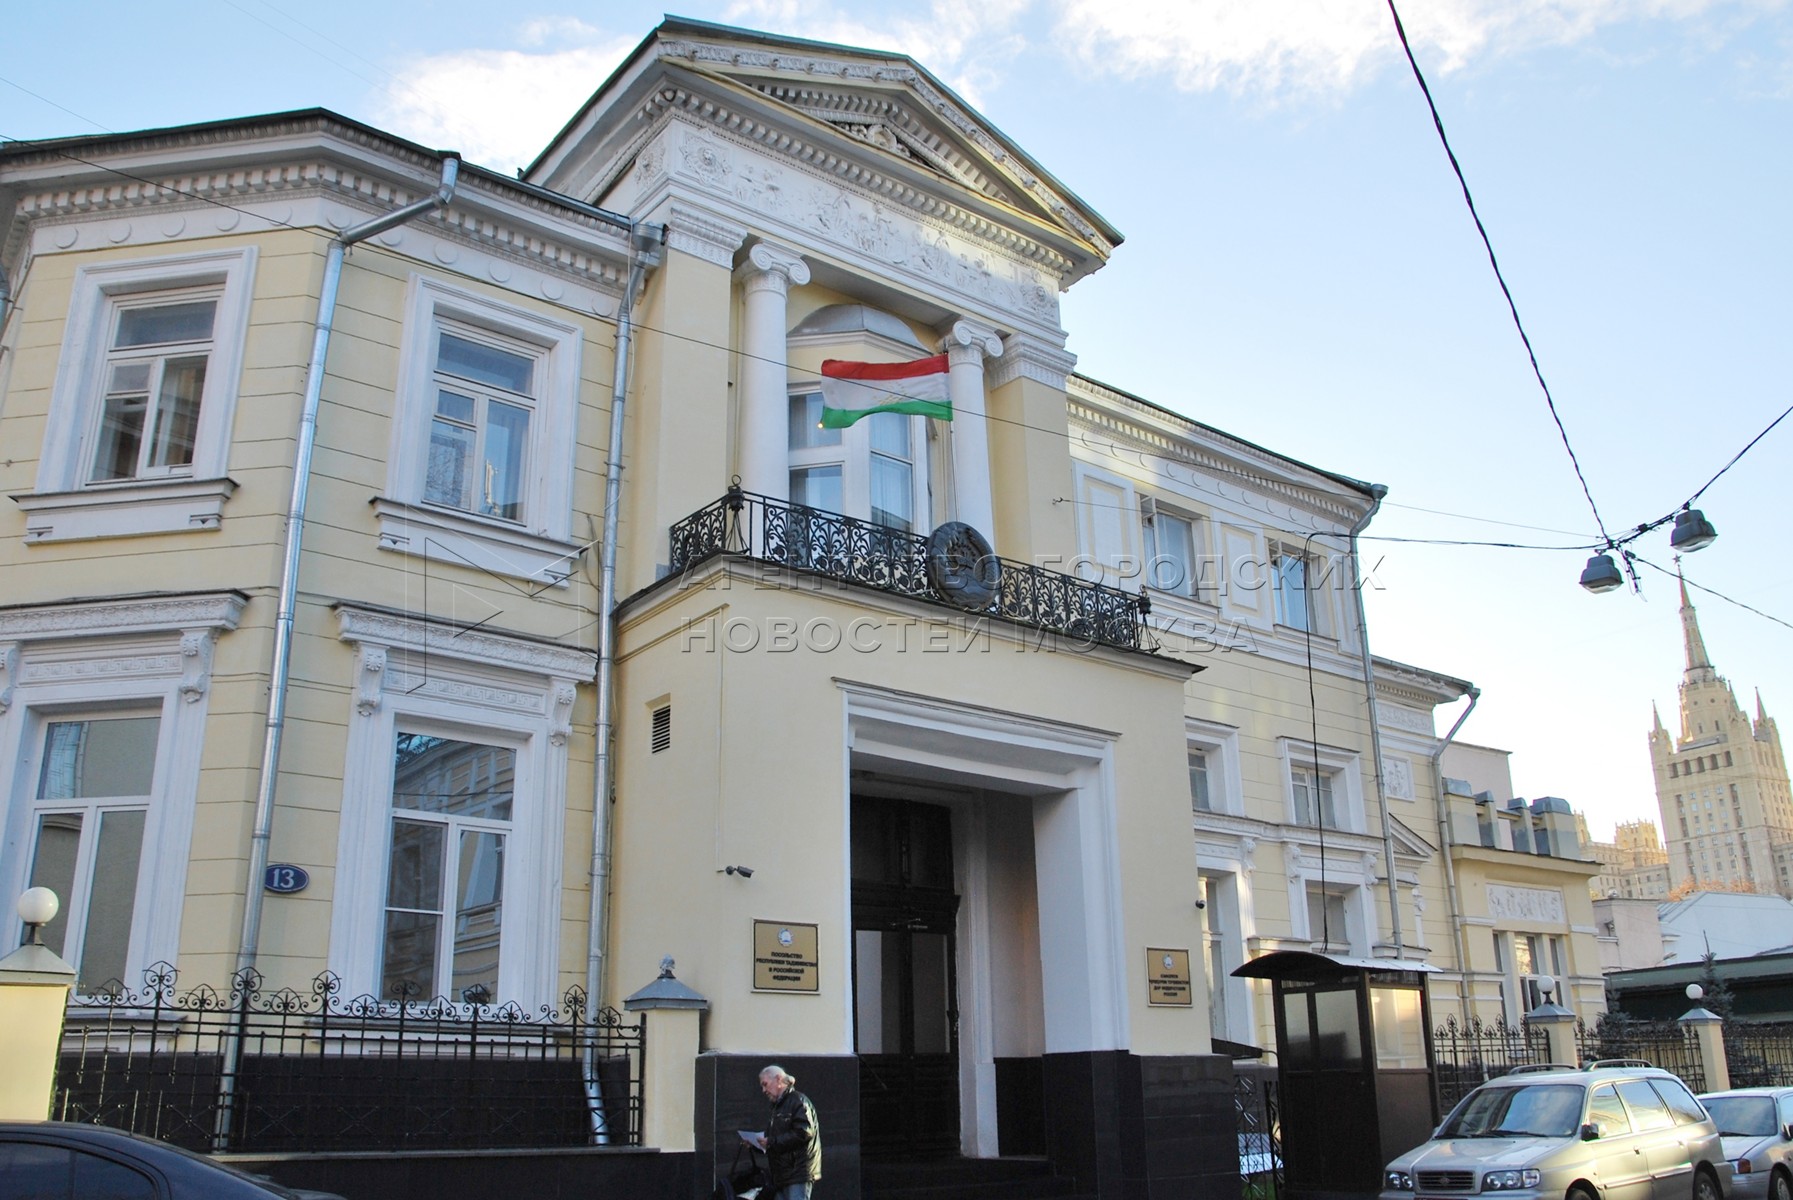 Таджикское посольство. Гранатный переулок 13 посольство Таджикистана. Консул Таджикистана в Москве. Посольство Республики Таджикистан в Москве. Посольство России в Таджикистане.